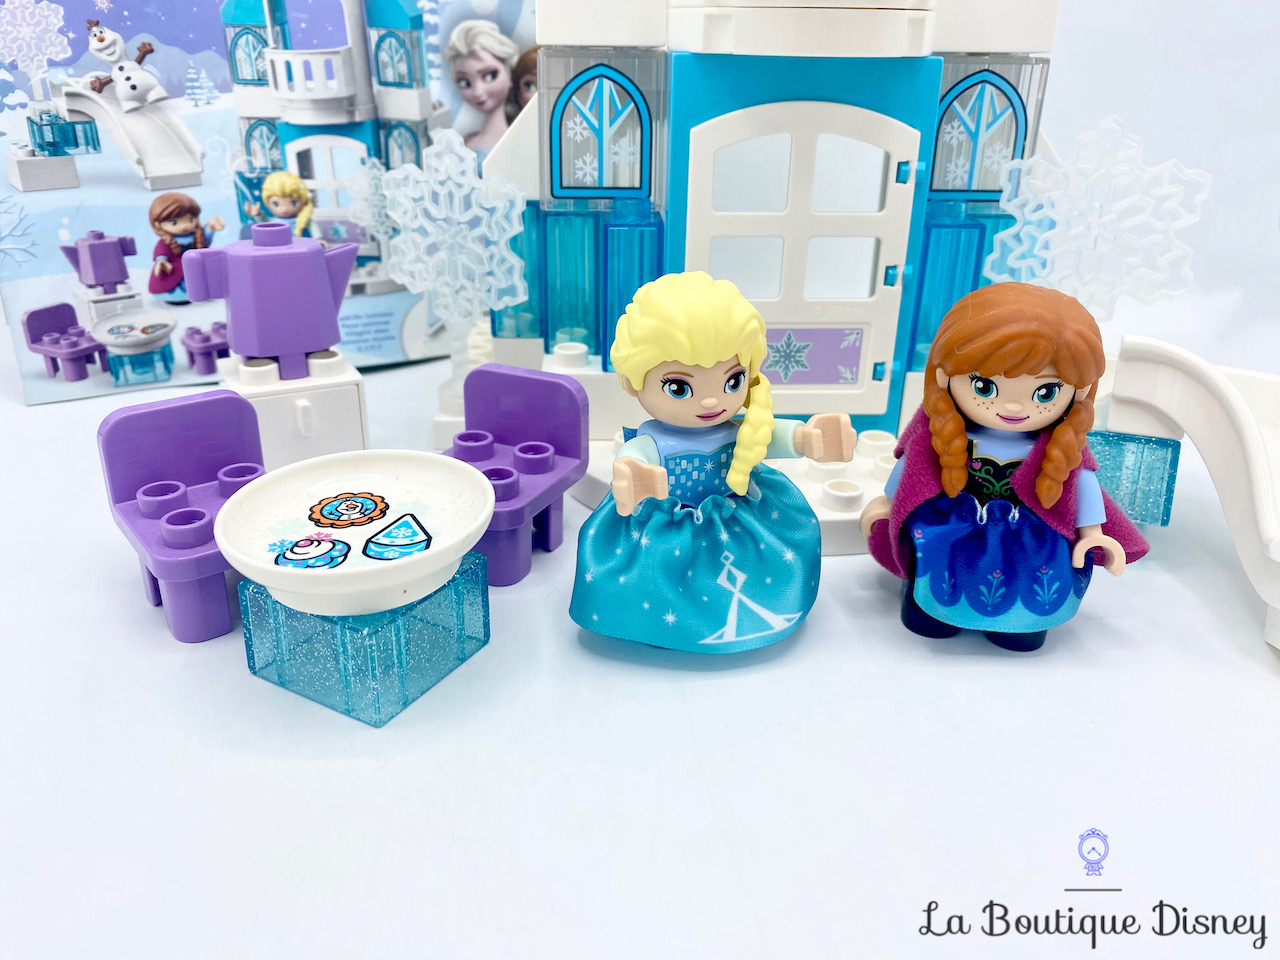 jouet-lego-duplo-10899-le-chateau-de-la-reine-des-neiges-disney-frozen-3